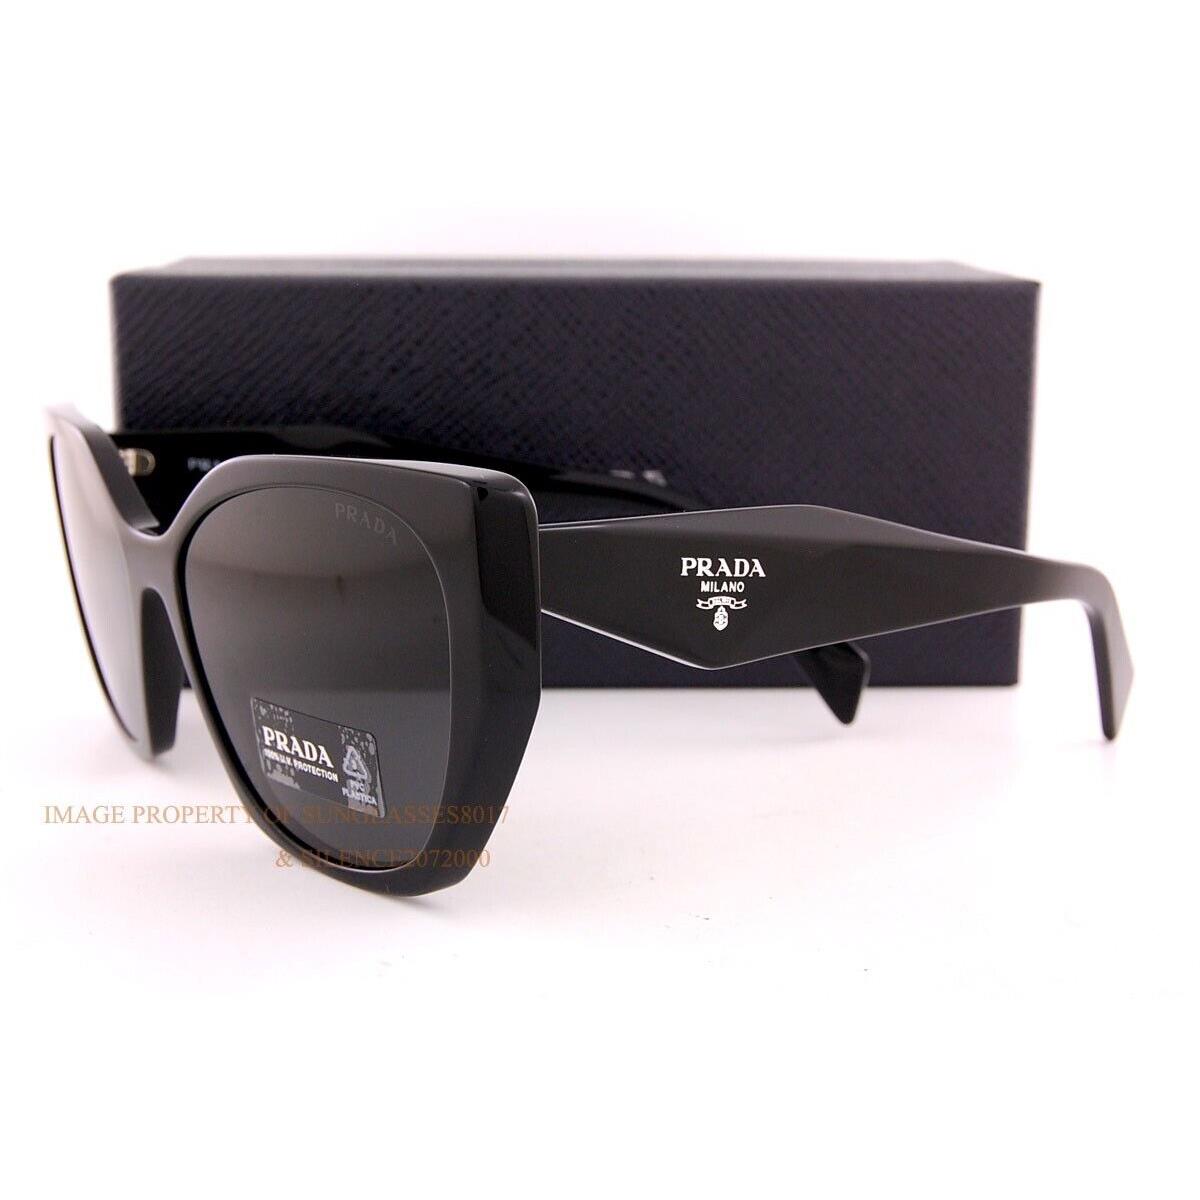 Prada sunglasses  - Black Frame, Gray Lens 1